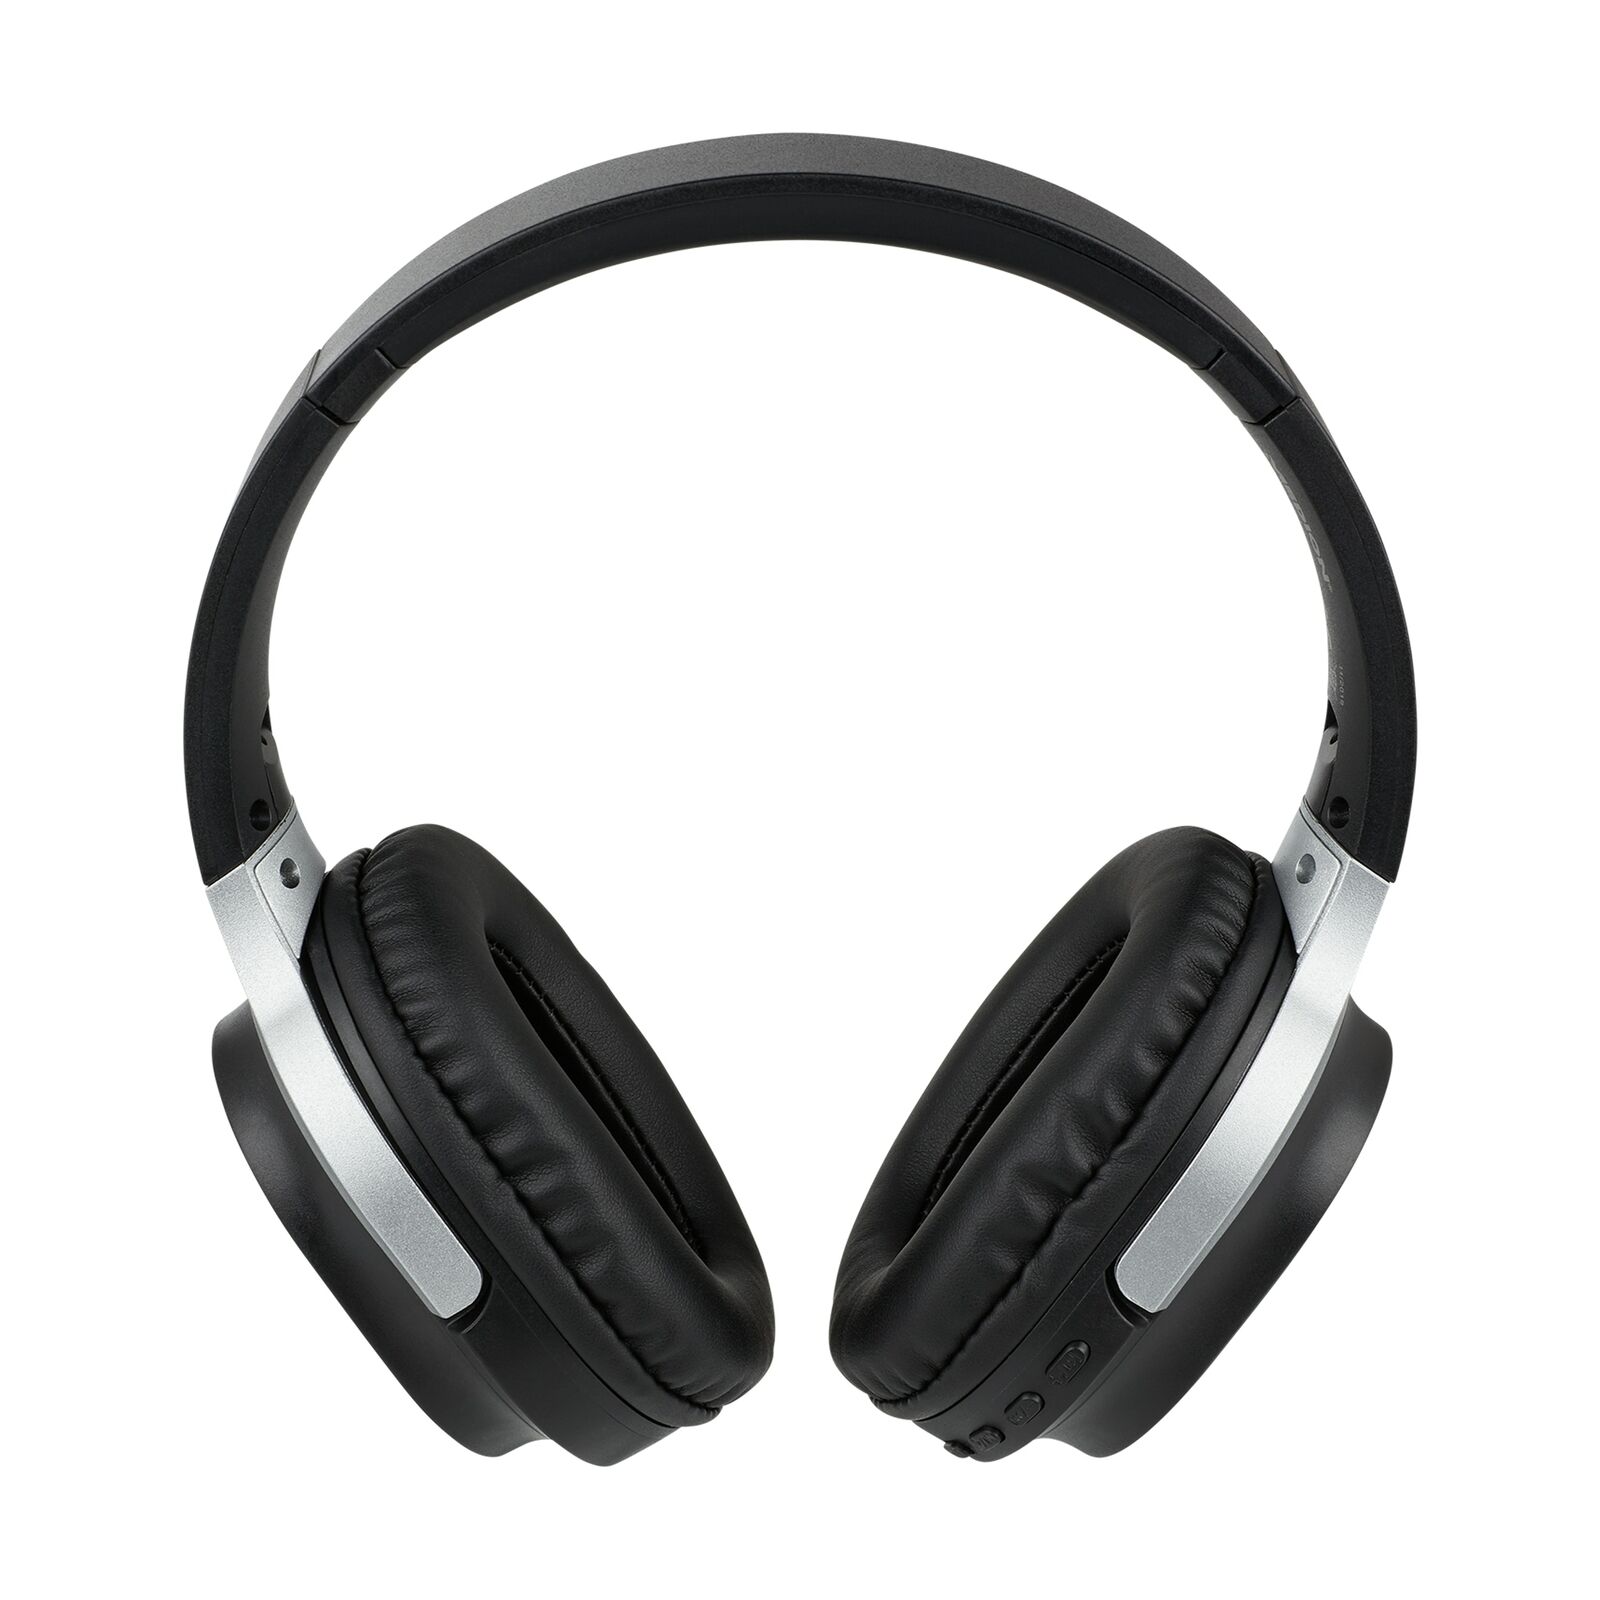 Bild zu Over-Ear Bluetooth Kopfhörer Medion Life E62180 für 17,99€ (Vergleich: 20,94€)